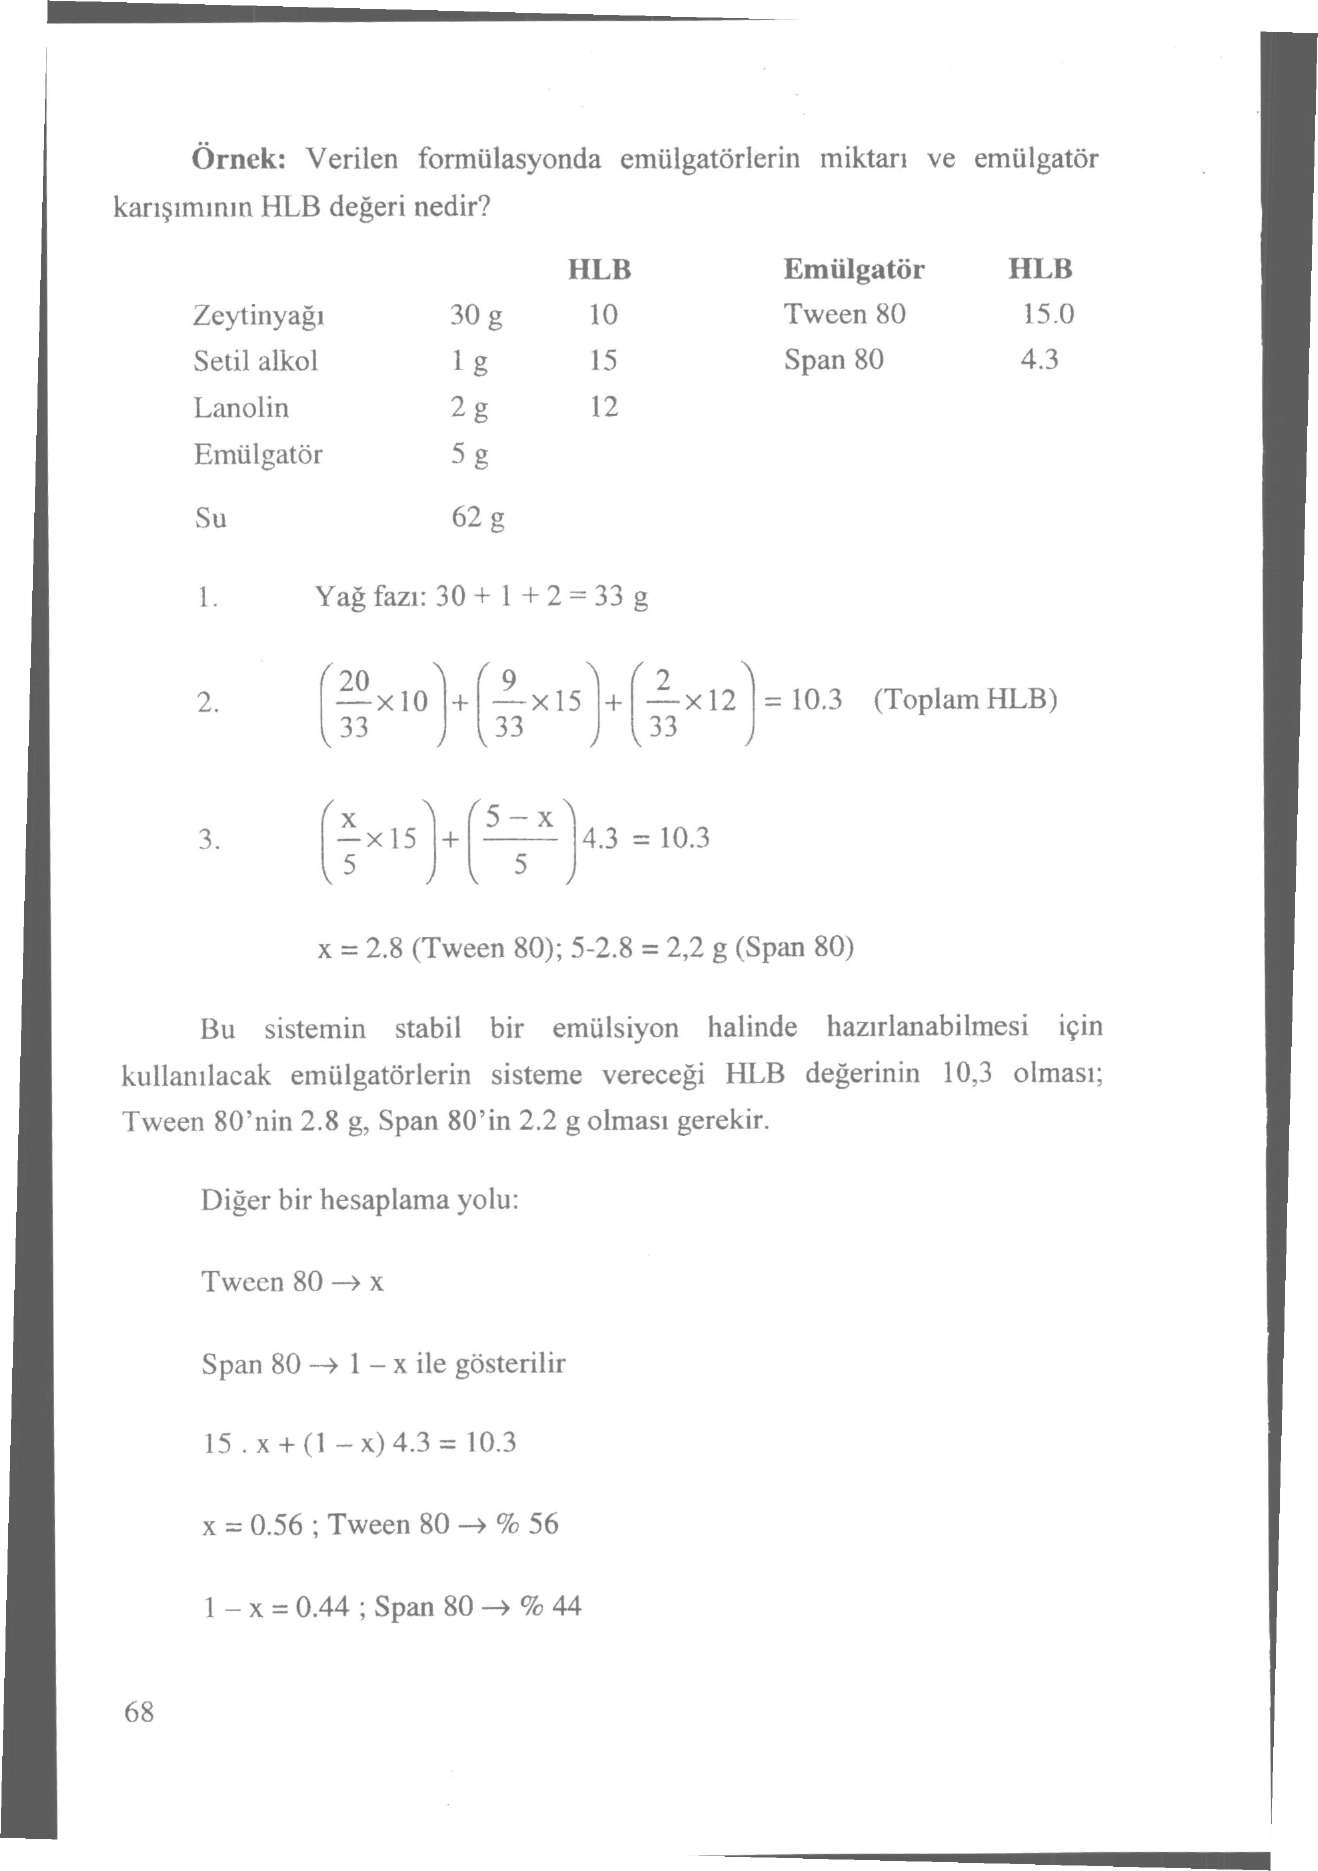 Örnek: Verilen formülasyonda emülgatörlerin miktarı ve emülgatör karışımının HLB değeri nedir? HLB Emülgatör HLB Zeytinyağı 30 g 10 Tvveen 80 15.0 Setil alkol ig 15 Span 80 4.